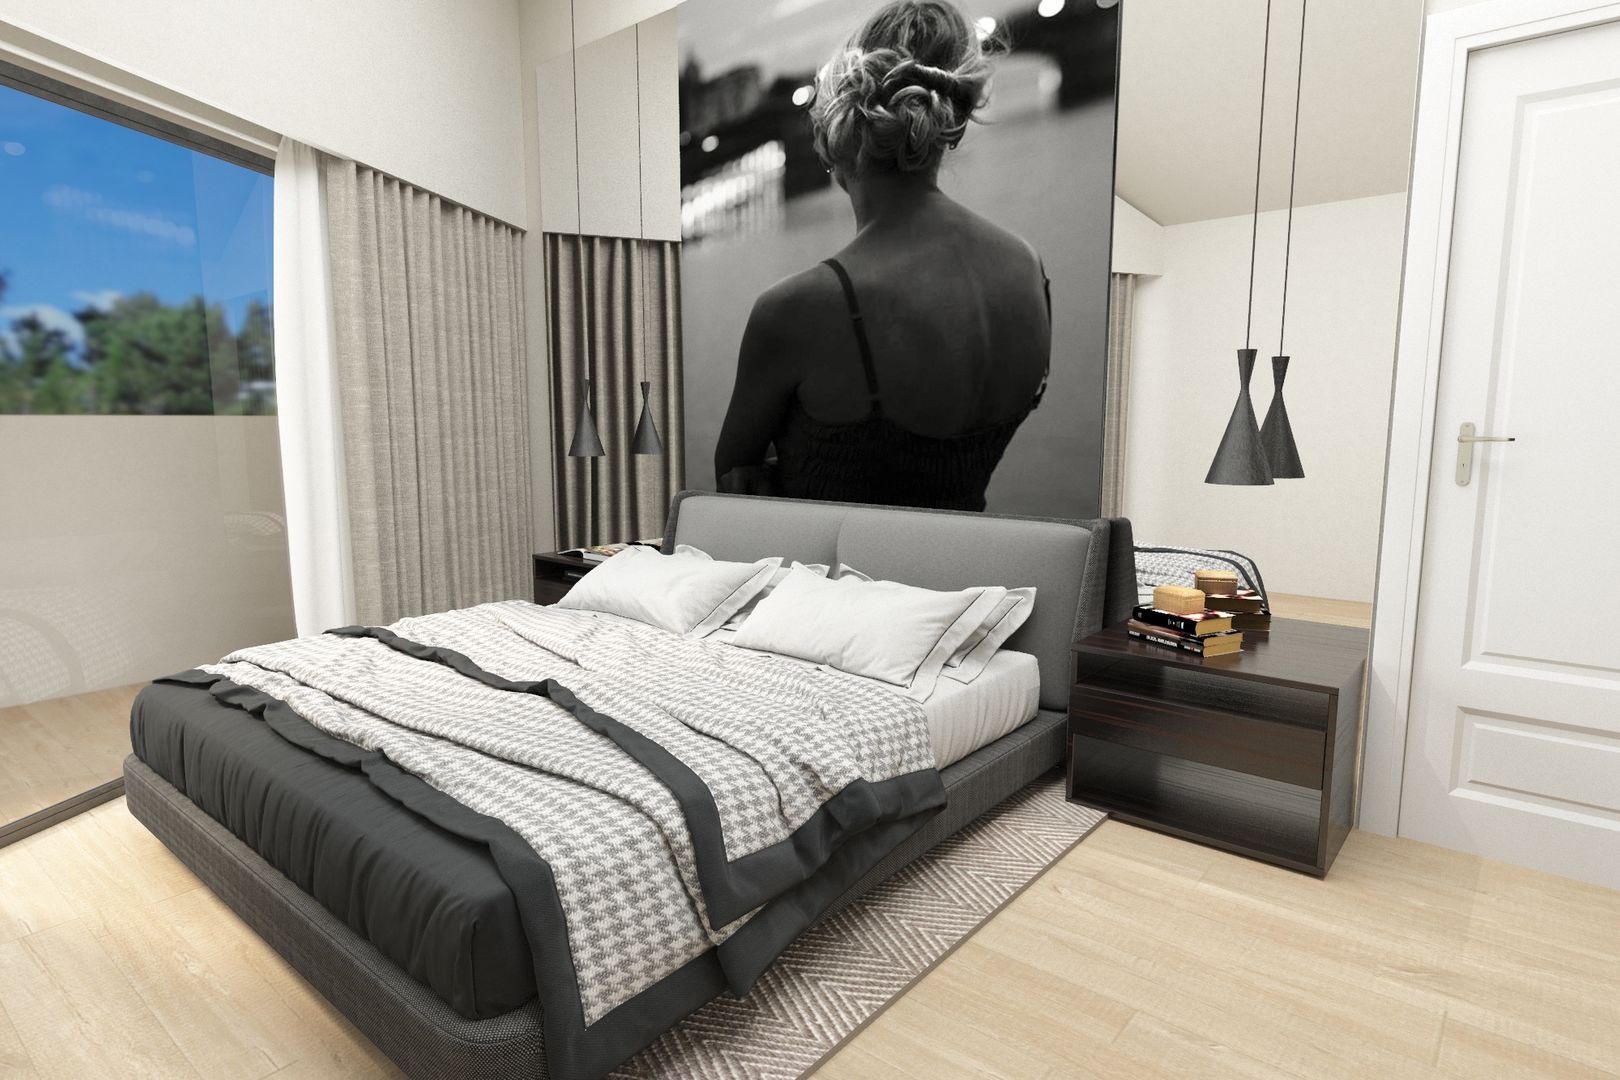 Main Suite No Place Like Home ® Quartos modernos Suite,grey,photo,suspended lamp